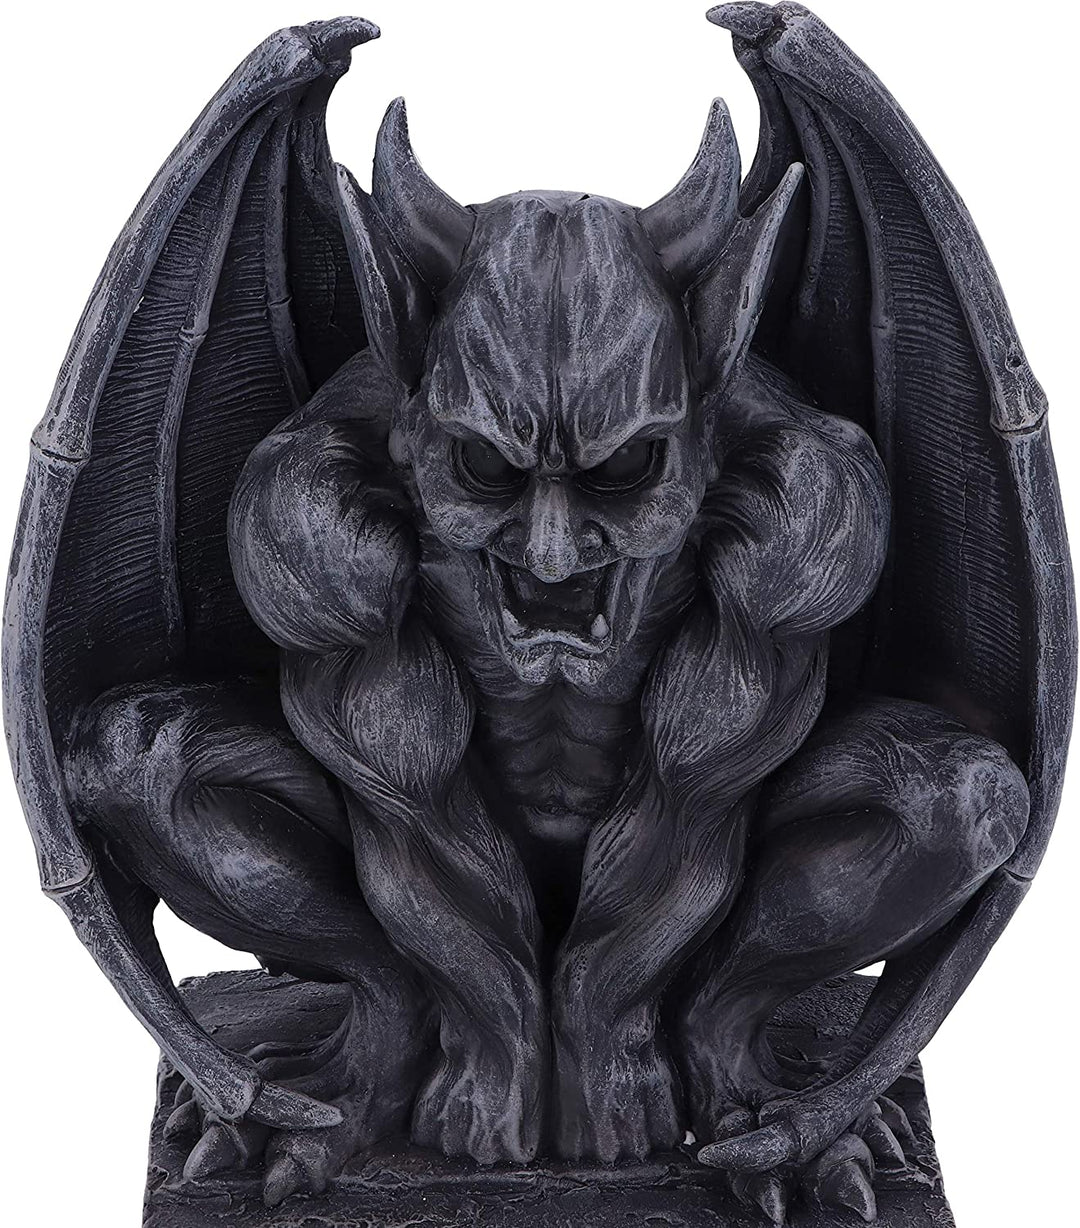 Nemesis Now Adalward dunkelschwarze groteske Gargoyle-Figur, 26 cm